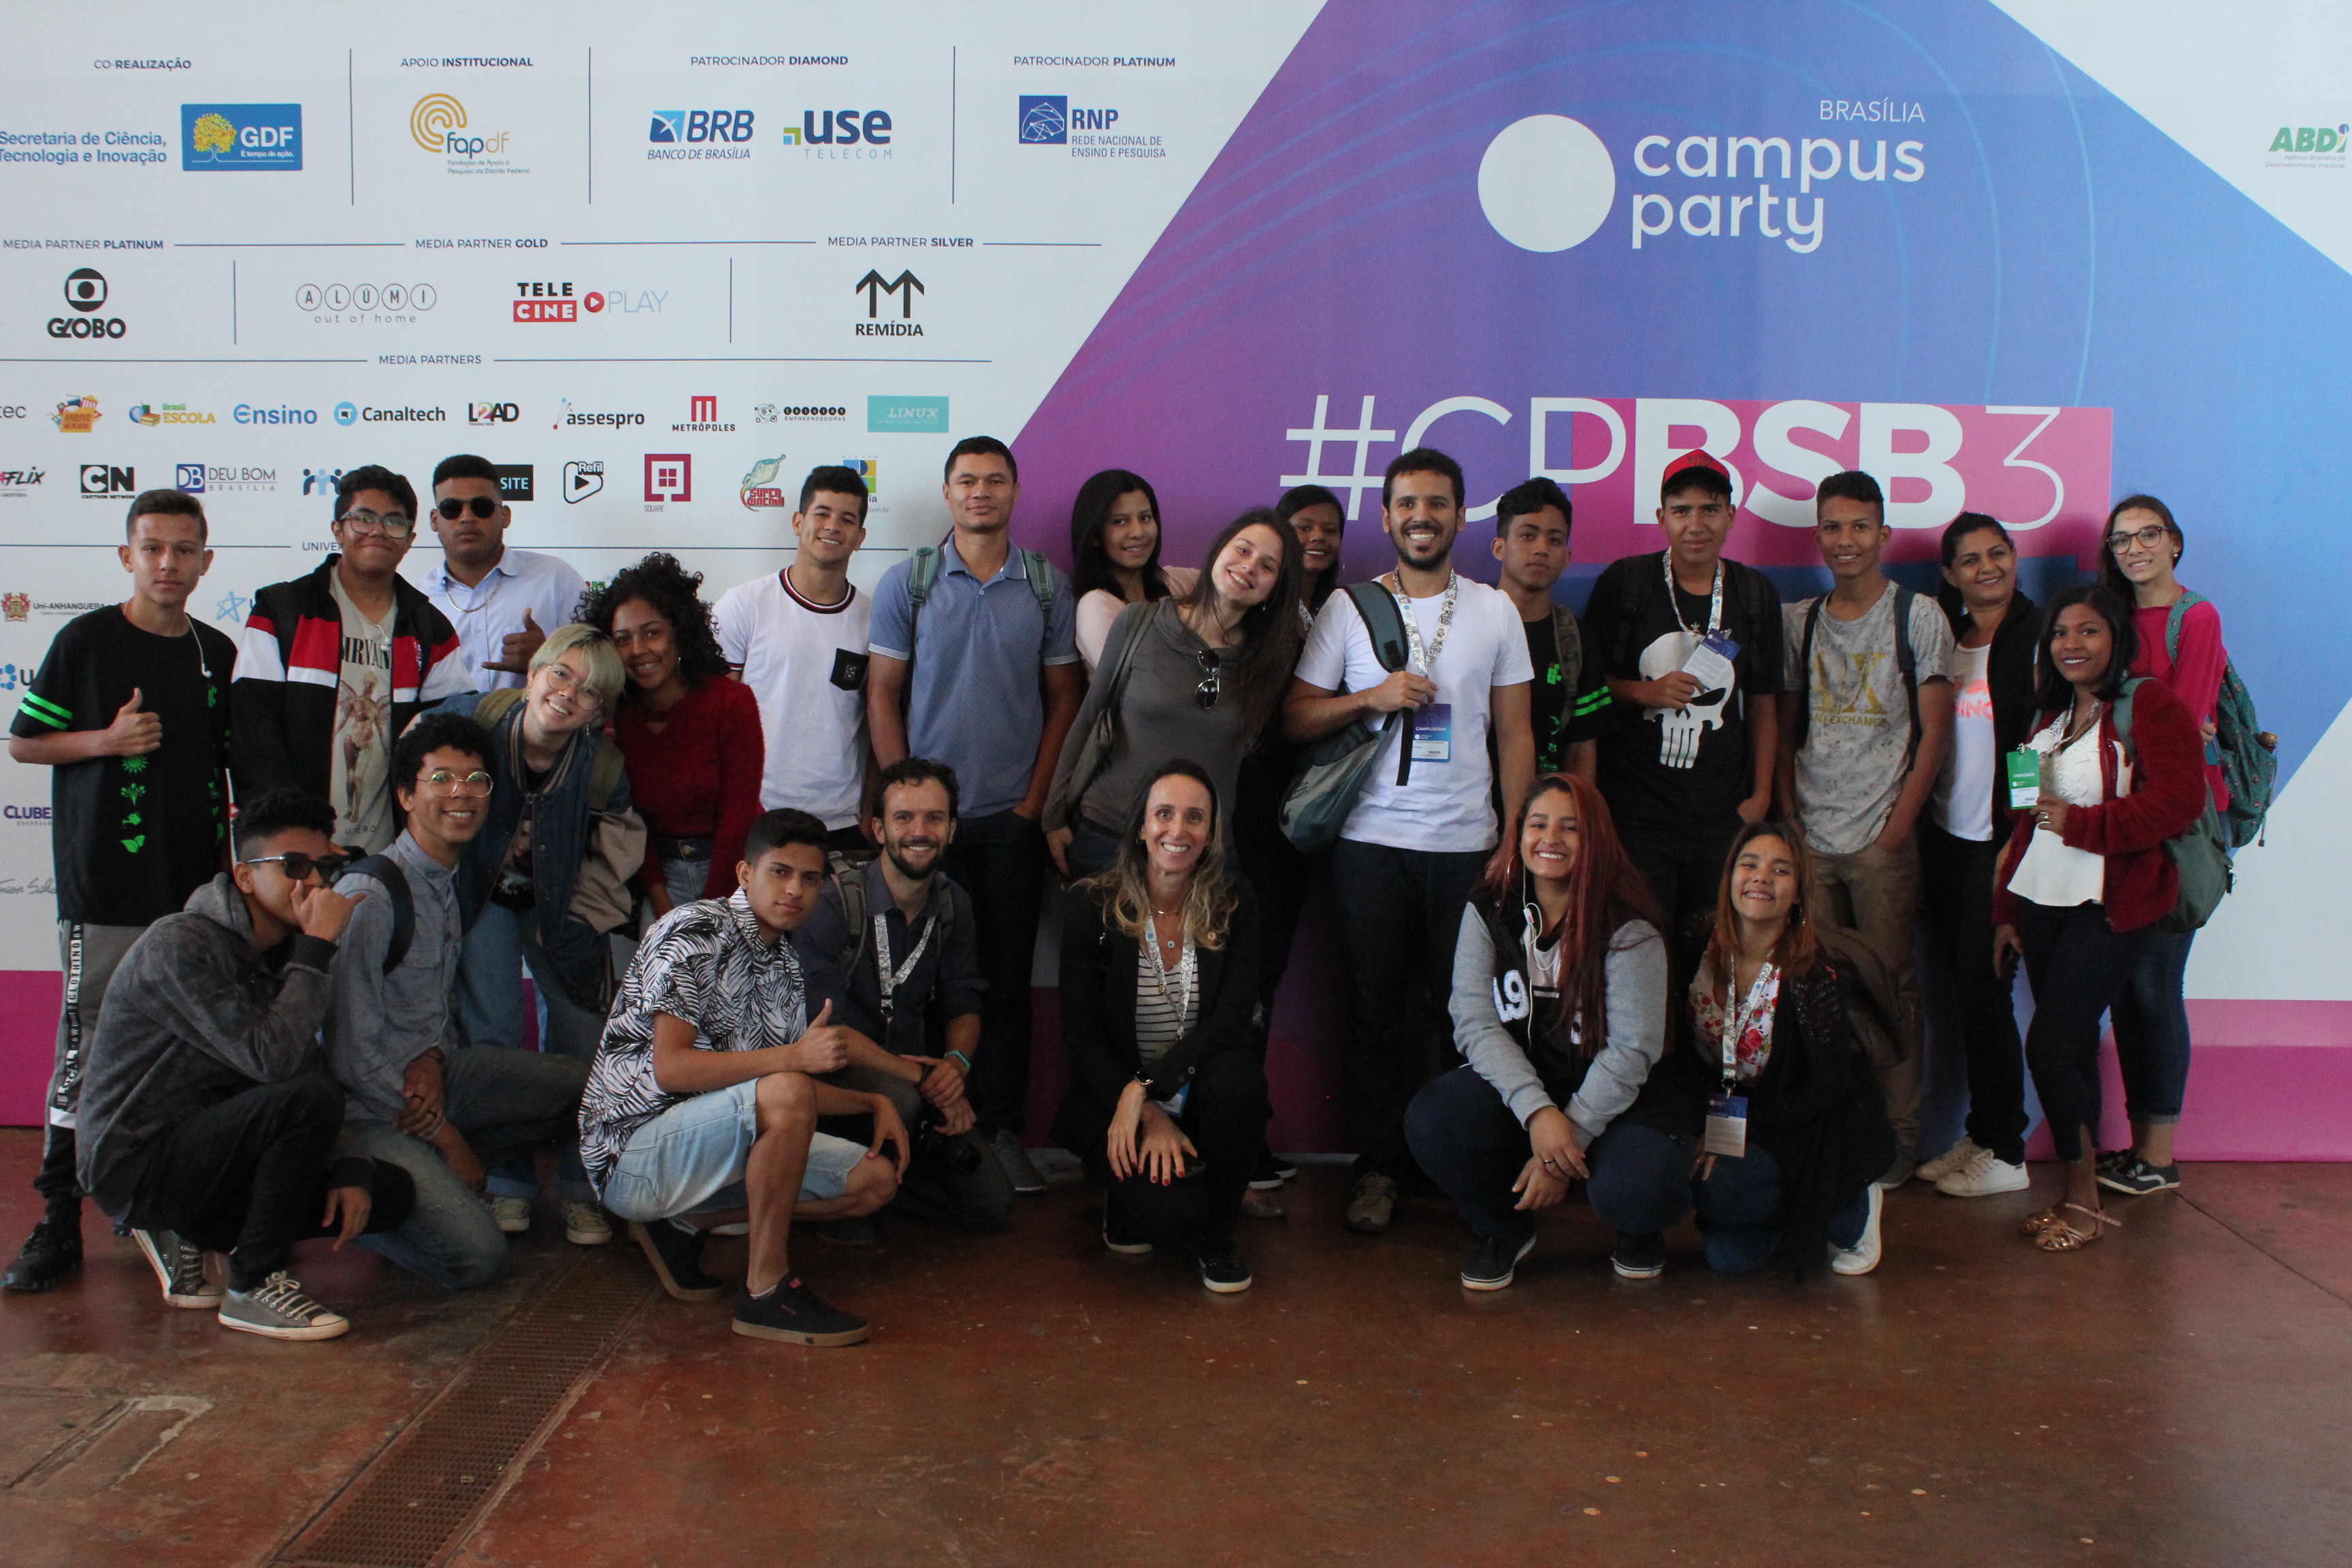 Alunos e servidores de diversos câmpus do IFG marcaram presença na Campus Party Brasília e também estarão na Campus Party Goiás